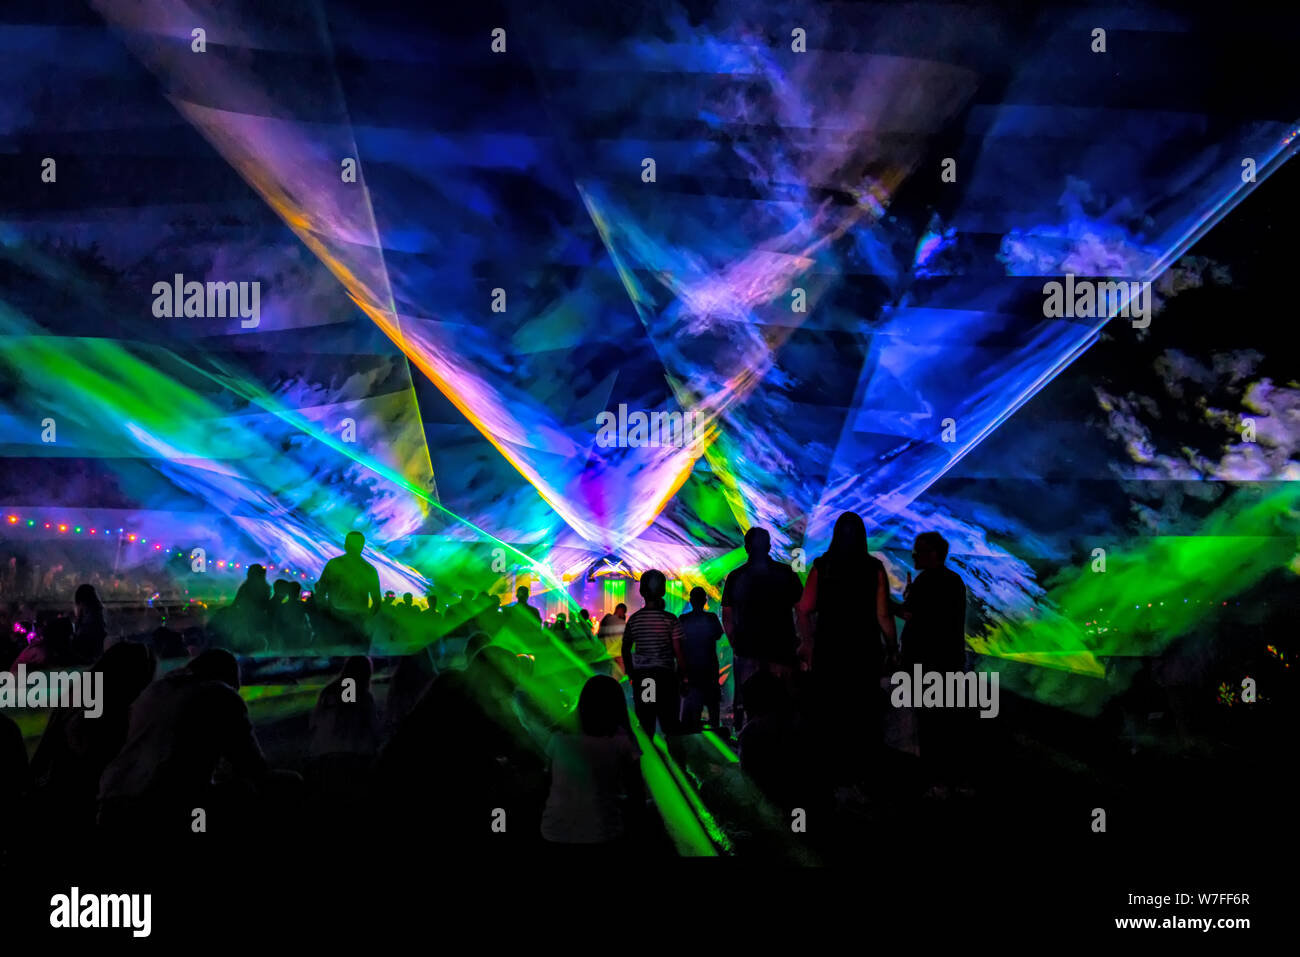 Laubach, Deutschland, 08.03.2019: Lasershow, luxuriöse Unterhaltung mit Publikum Silhouetten in Diskothek event, Festival oder Neues Jahr Stockfoto